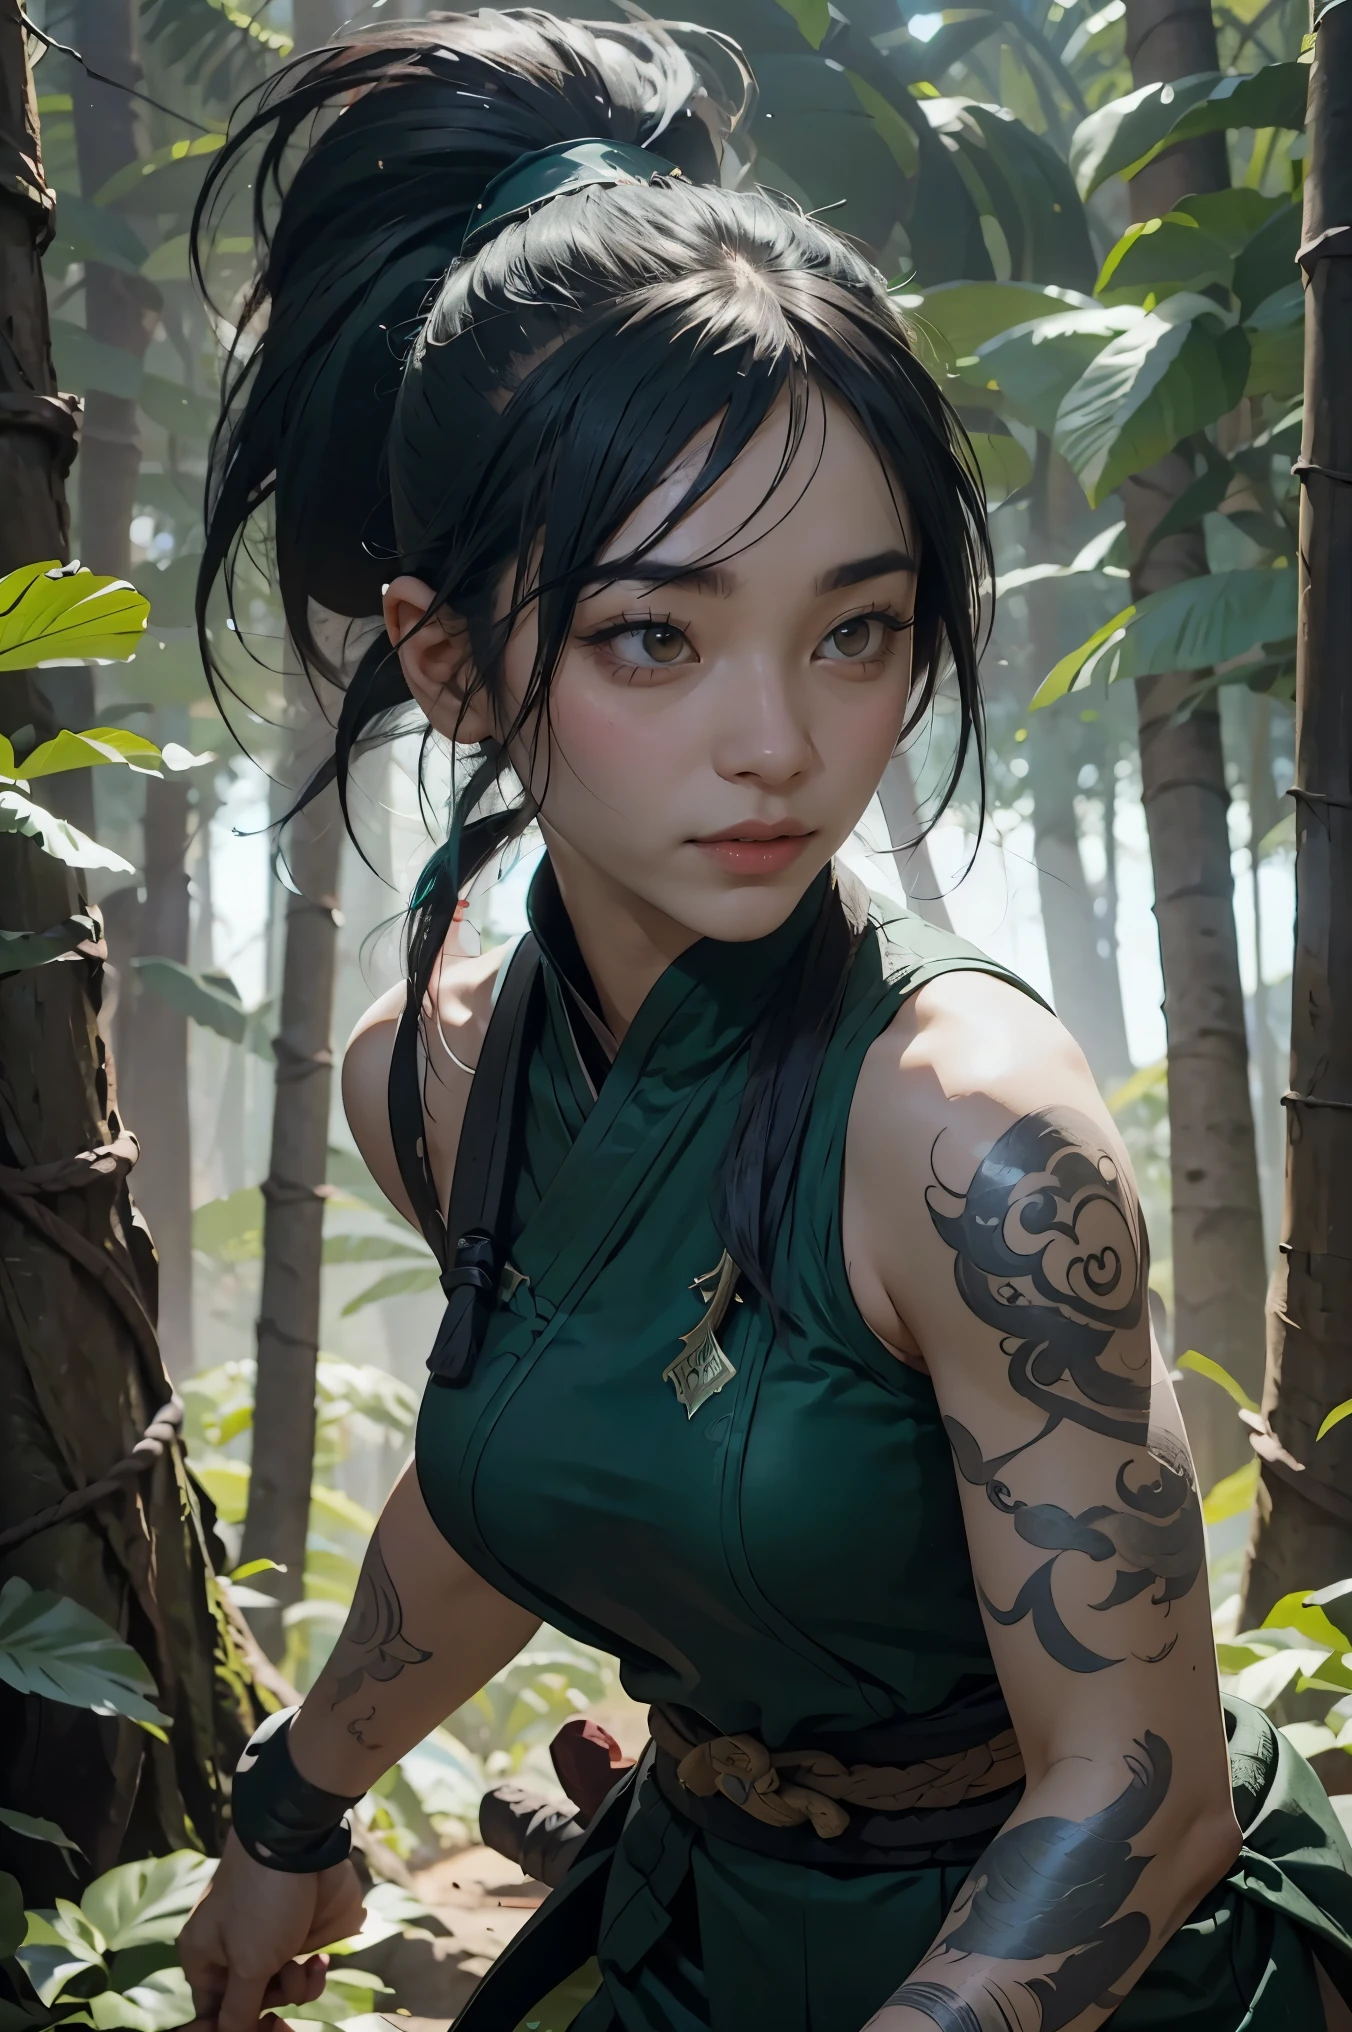 Татуировка Акали на плече в League of Legends，один человек，обои，Фон в лесу，Дизайн игровых персонажей，высокий хвост，Супер легкое чувство，Женщина-ниндзя。